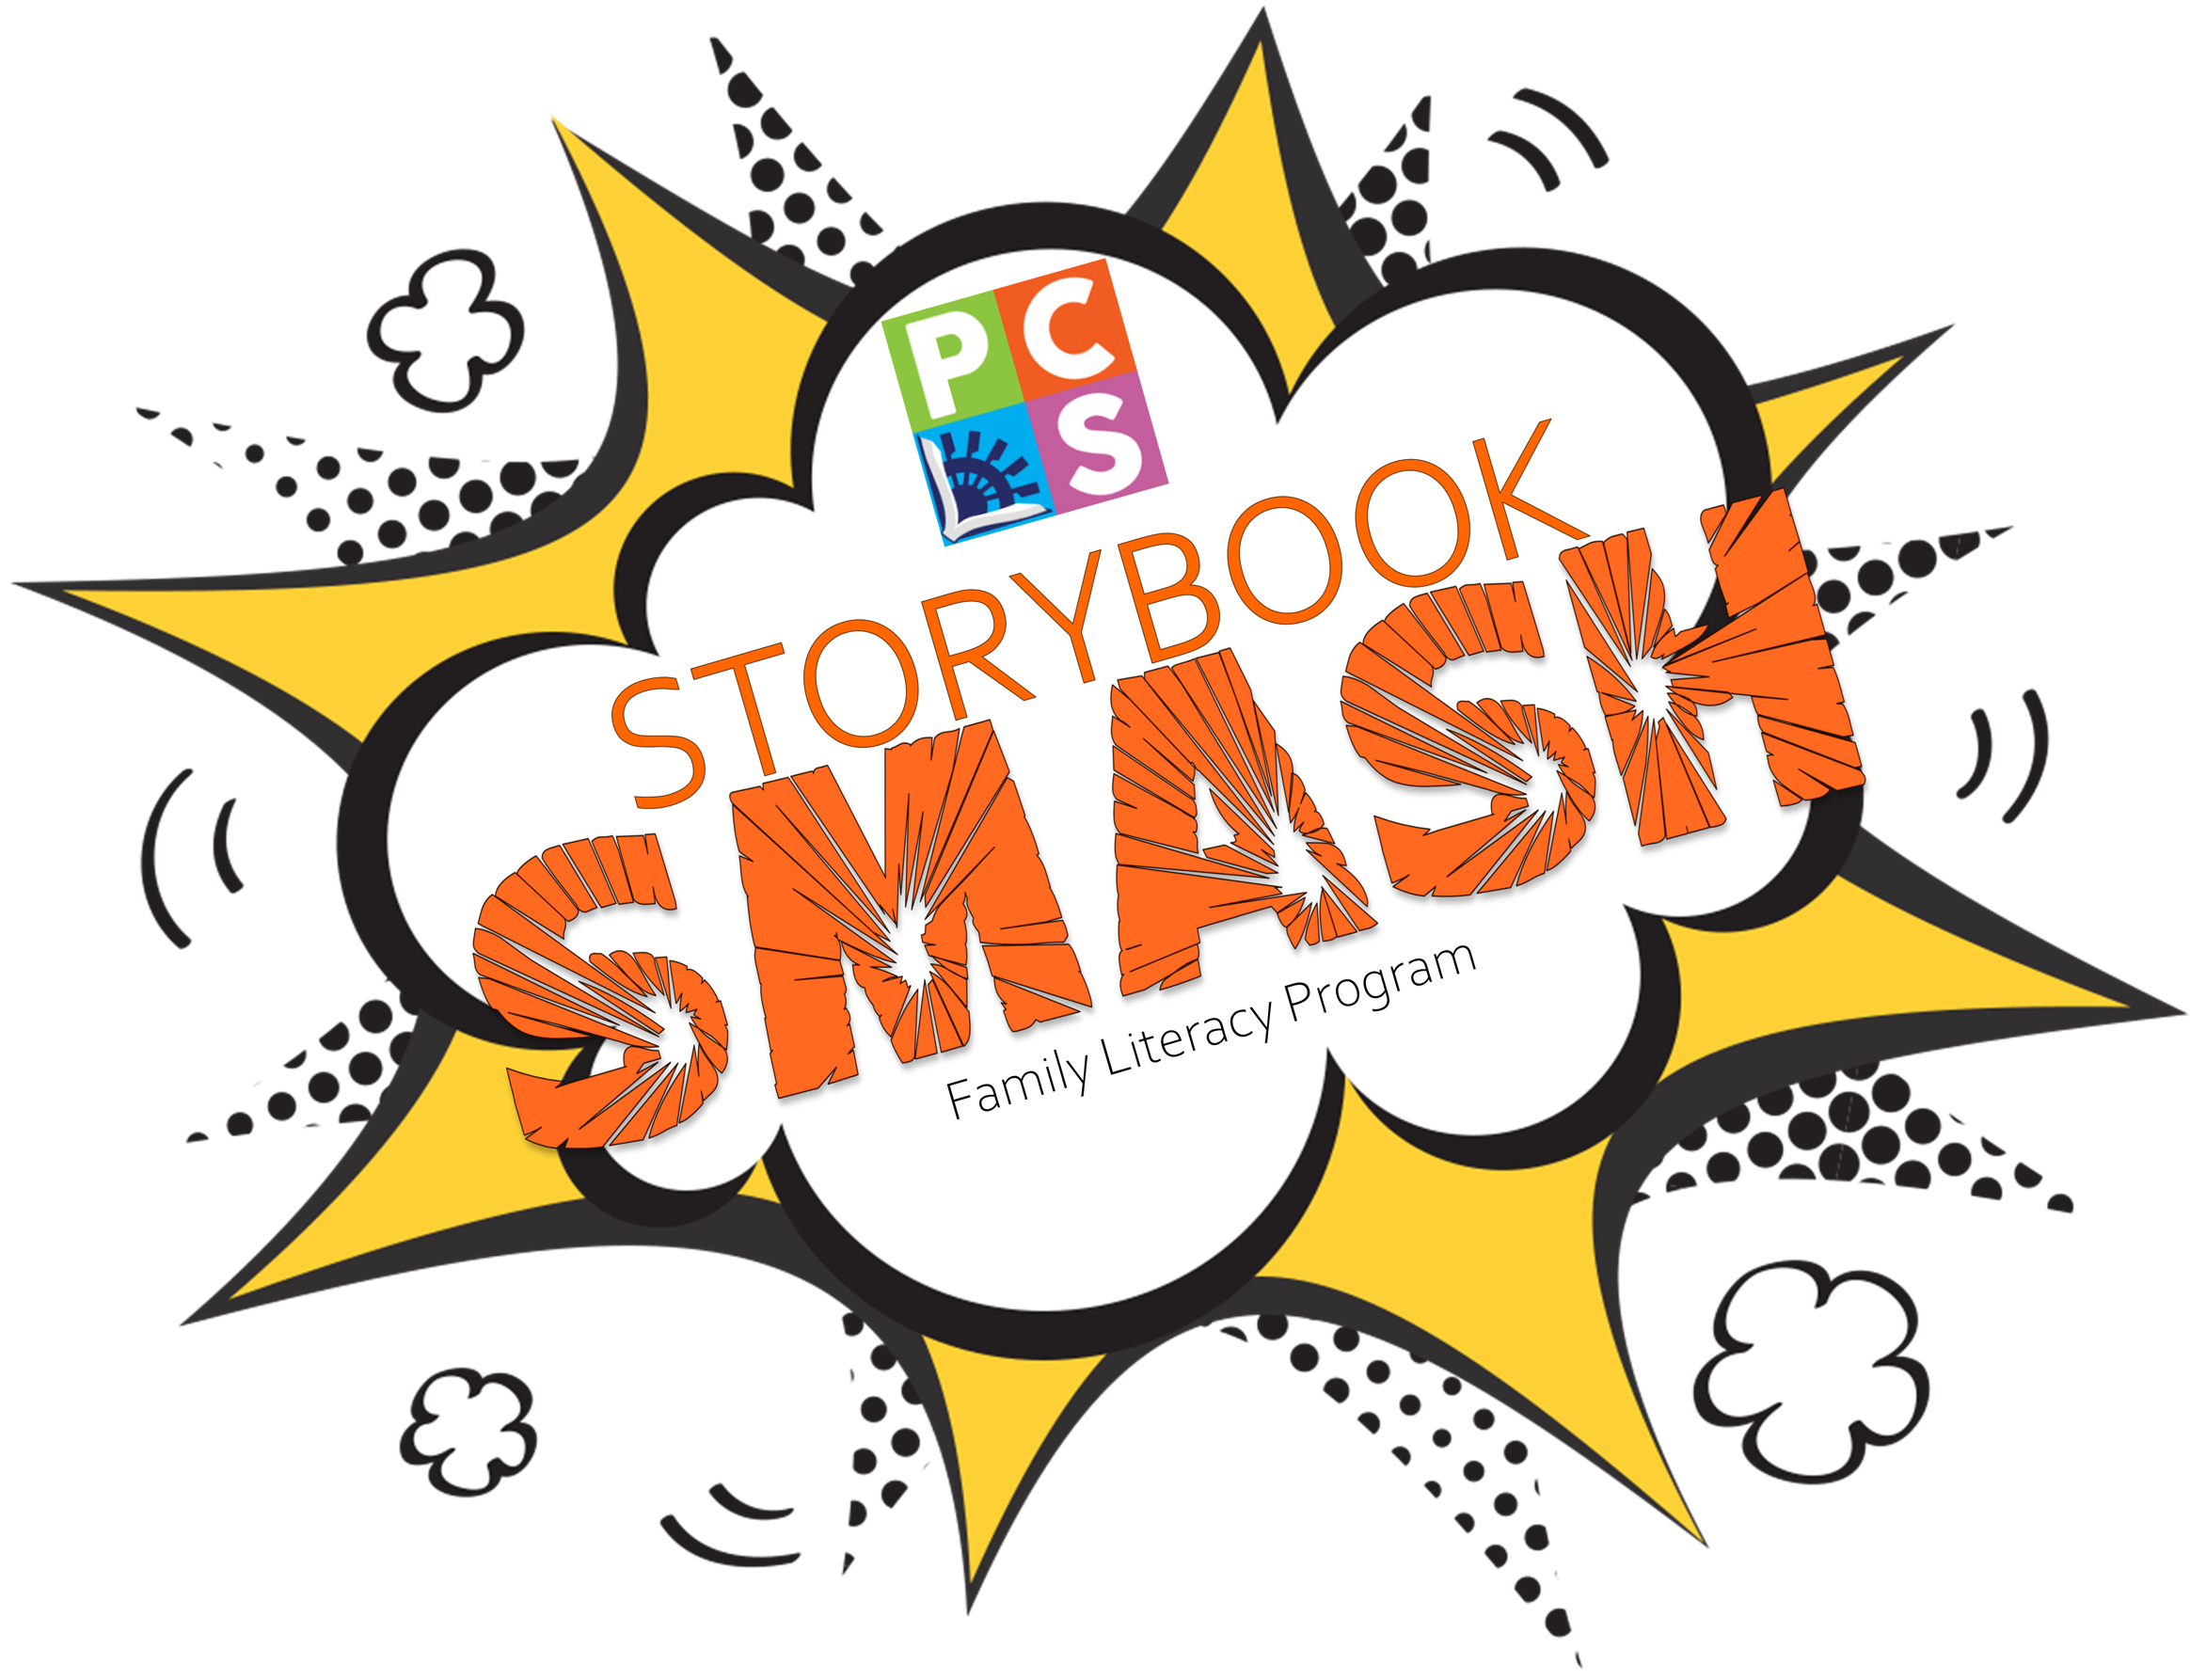 StorybookSMASH Family Literacy Program Logo